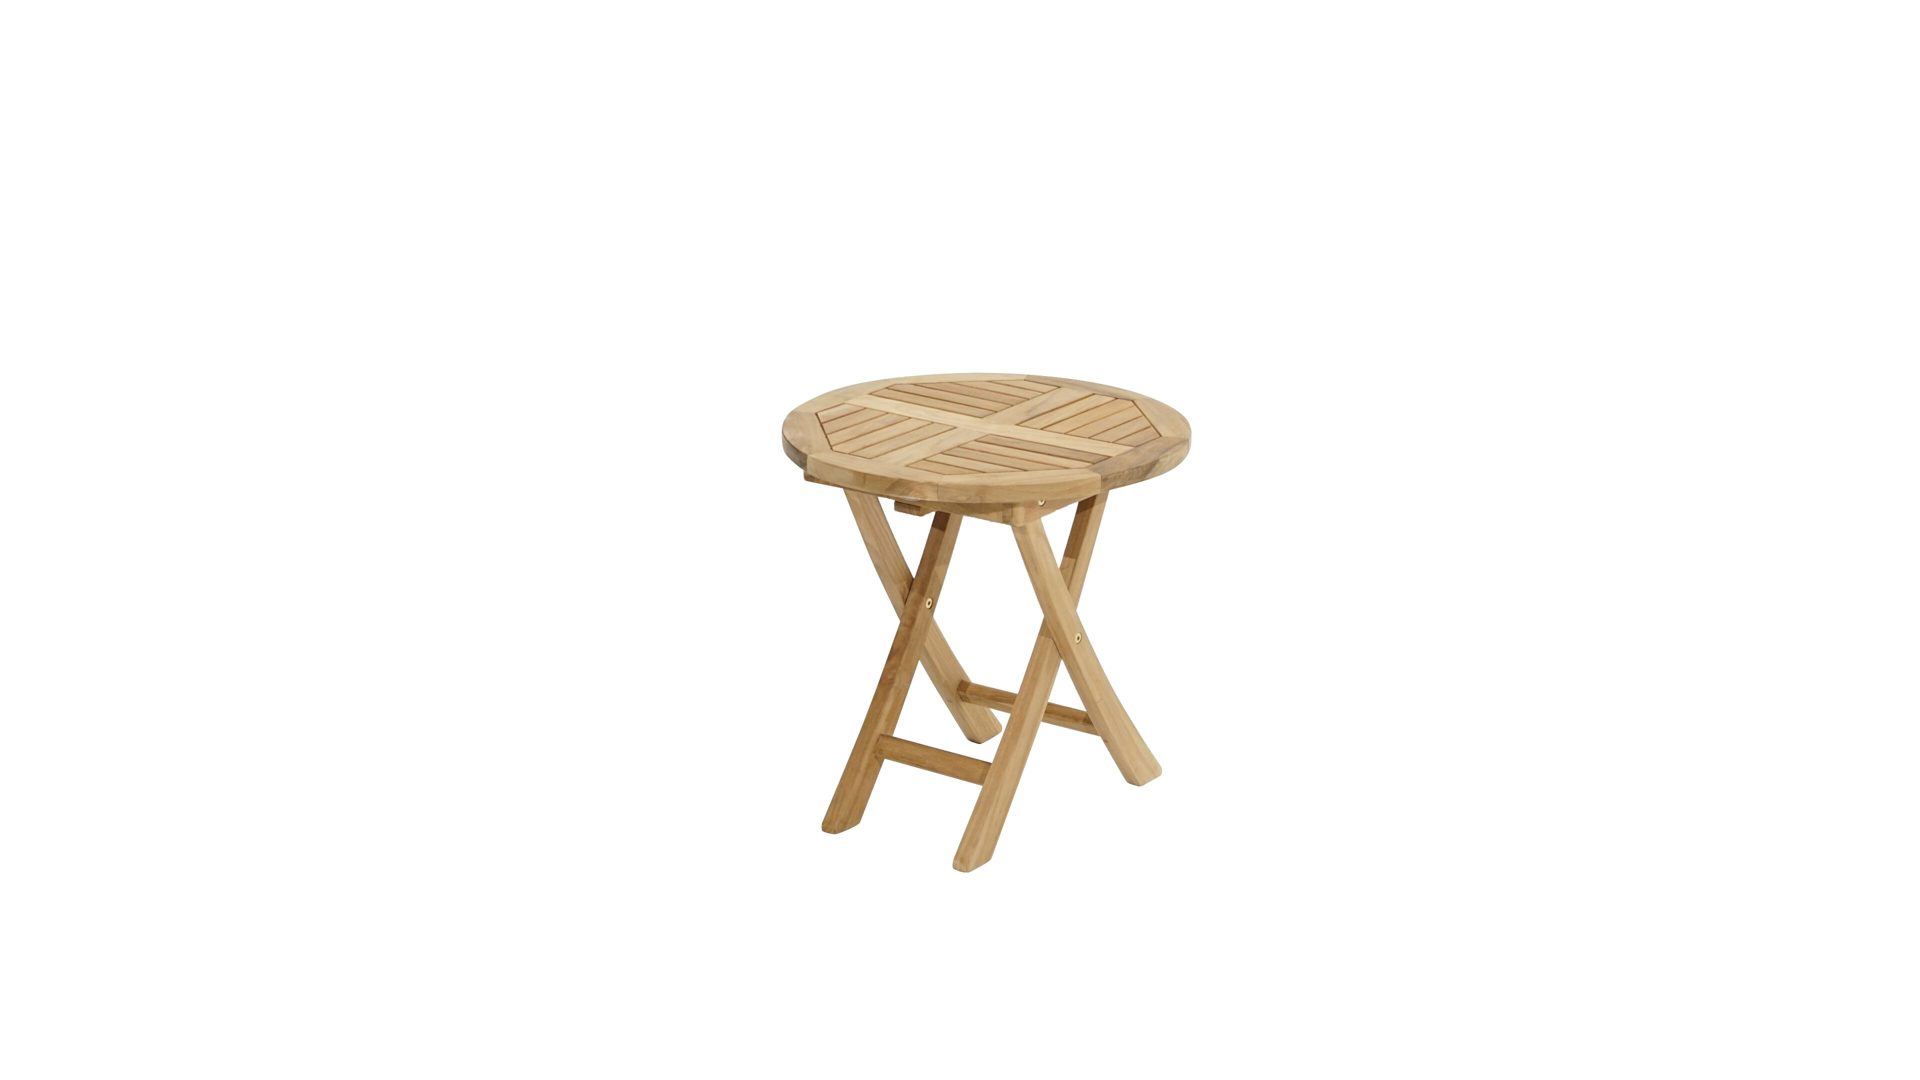 Gartentisch Ploß aus Holz in Holzfarben Ploß® Beistelltisch Tennessee als Gartenmöbel Teakholz – Durchmesser ca. 50 cm